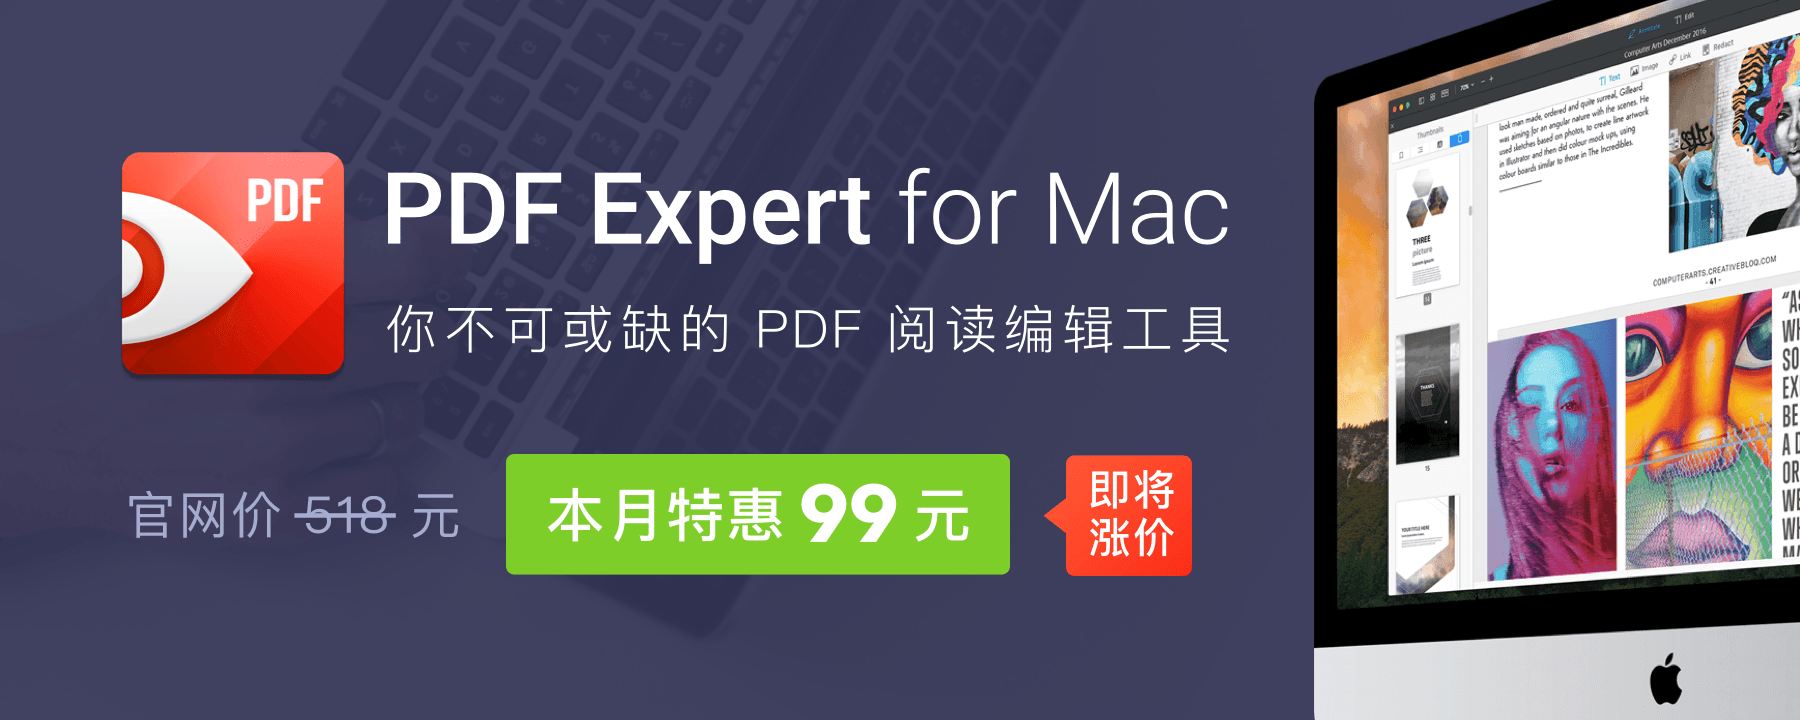 本月PDF Expert(PDF编辑工具)商城新用户特惠价94元正版授权